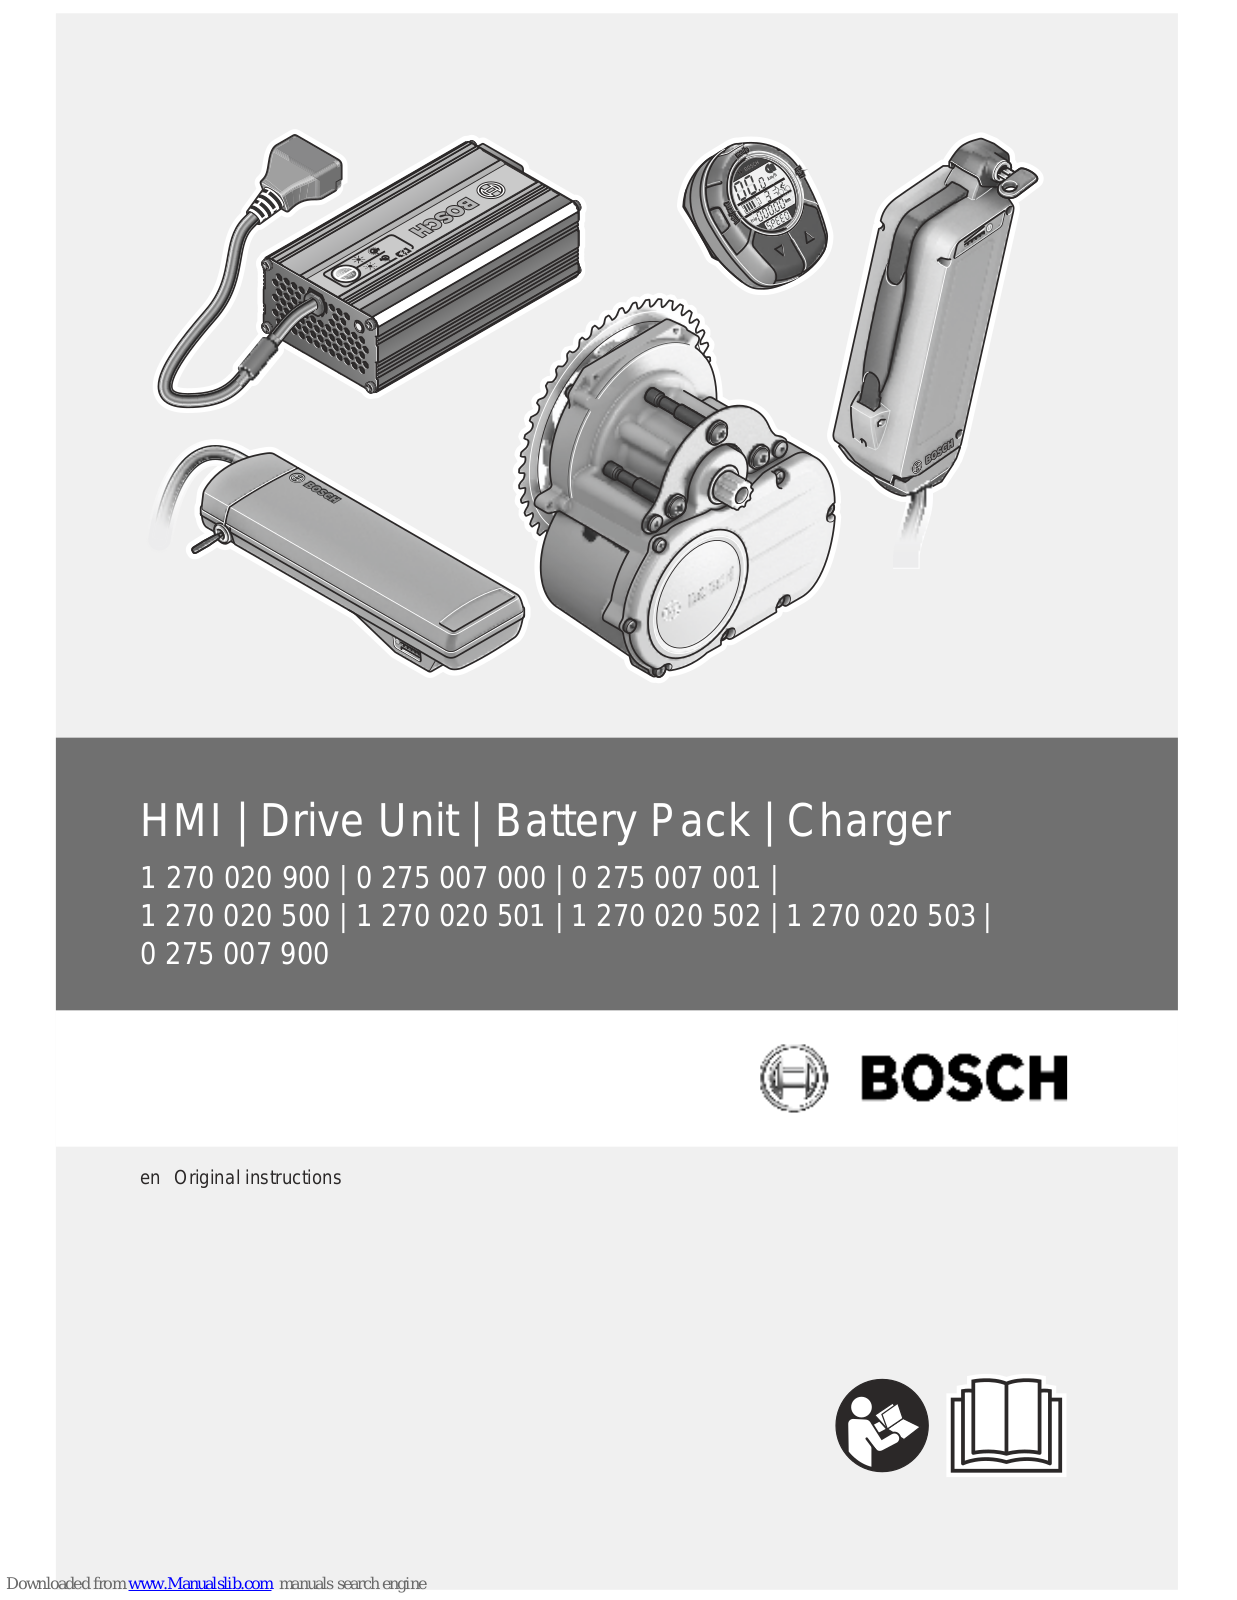 Bosch 1 270 020 900, 0 275 007 000, 1 270 020 500, 1 270 020 501, 1 270 020 502 User Manual